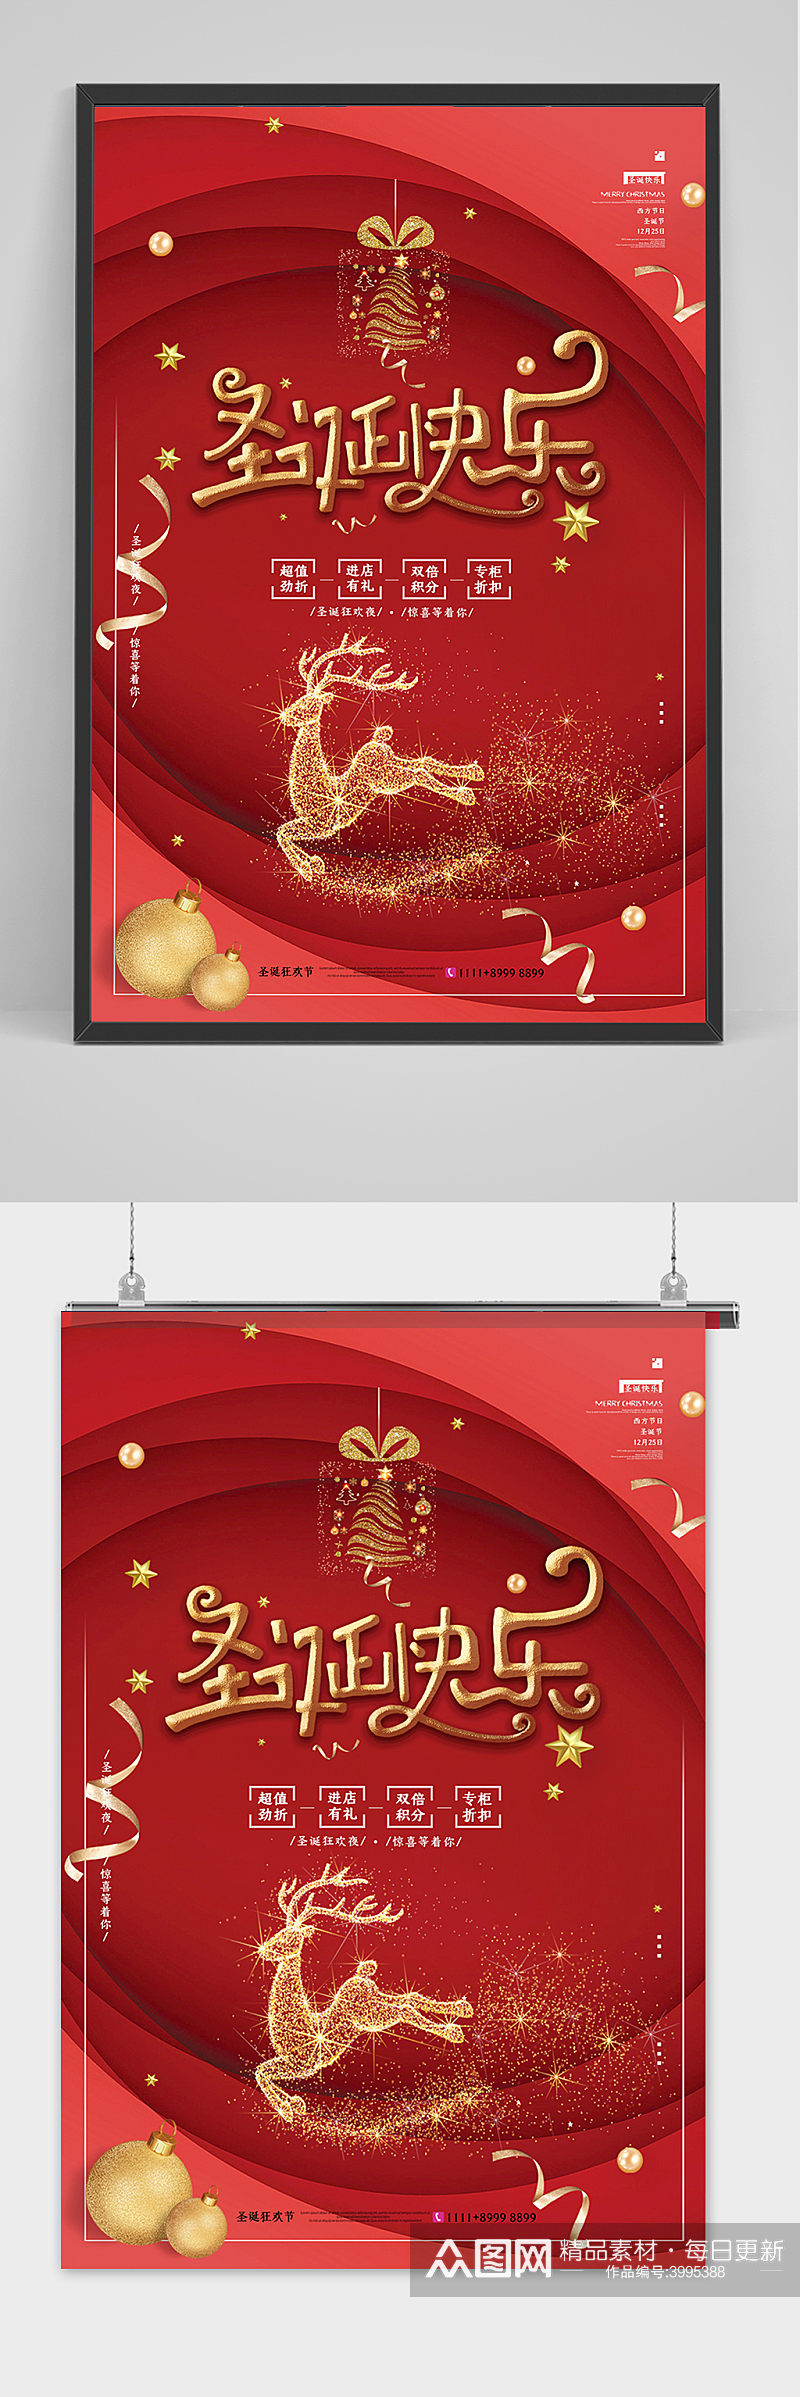 2021年圣诞节快乐海报设计素材